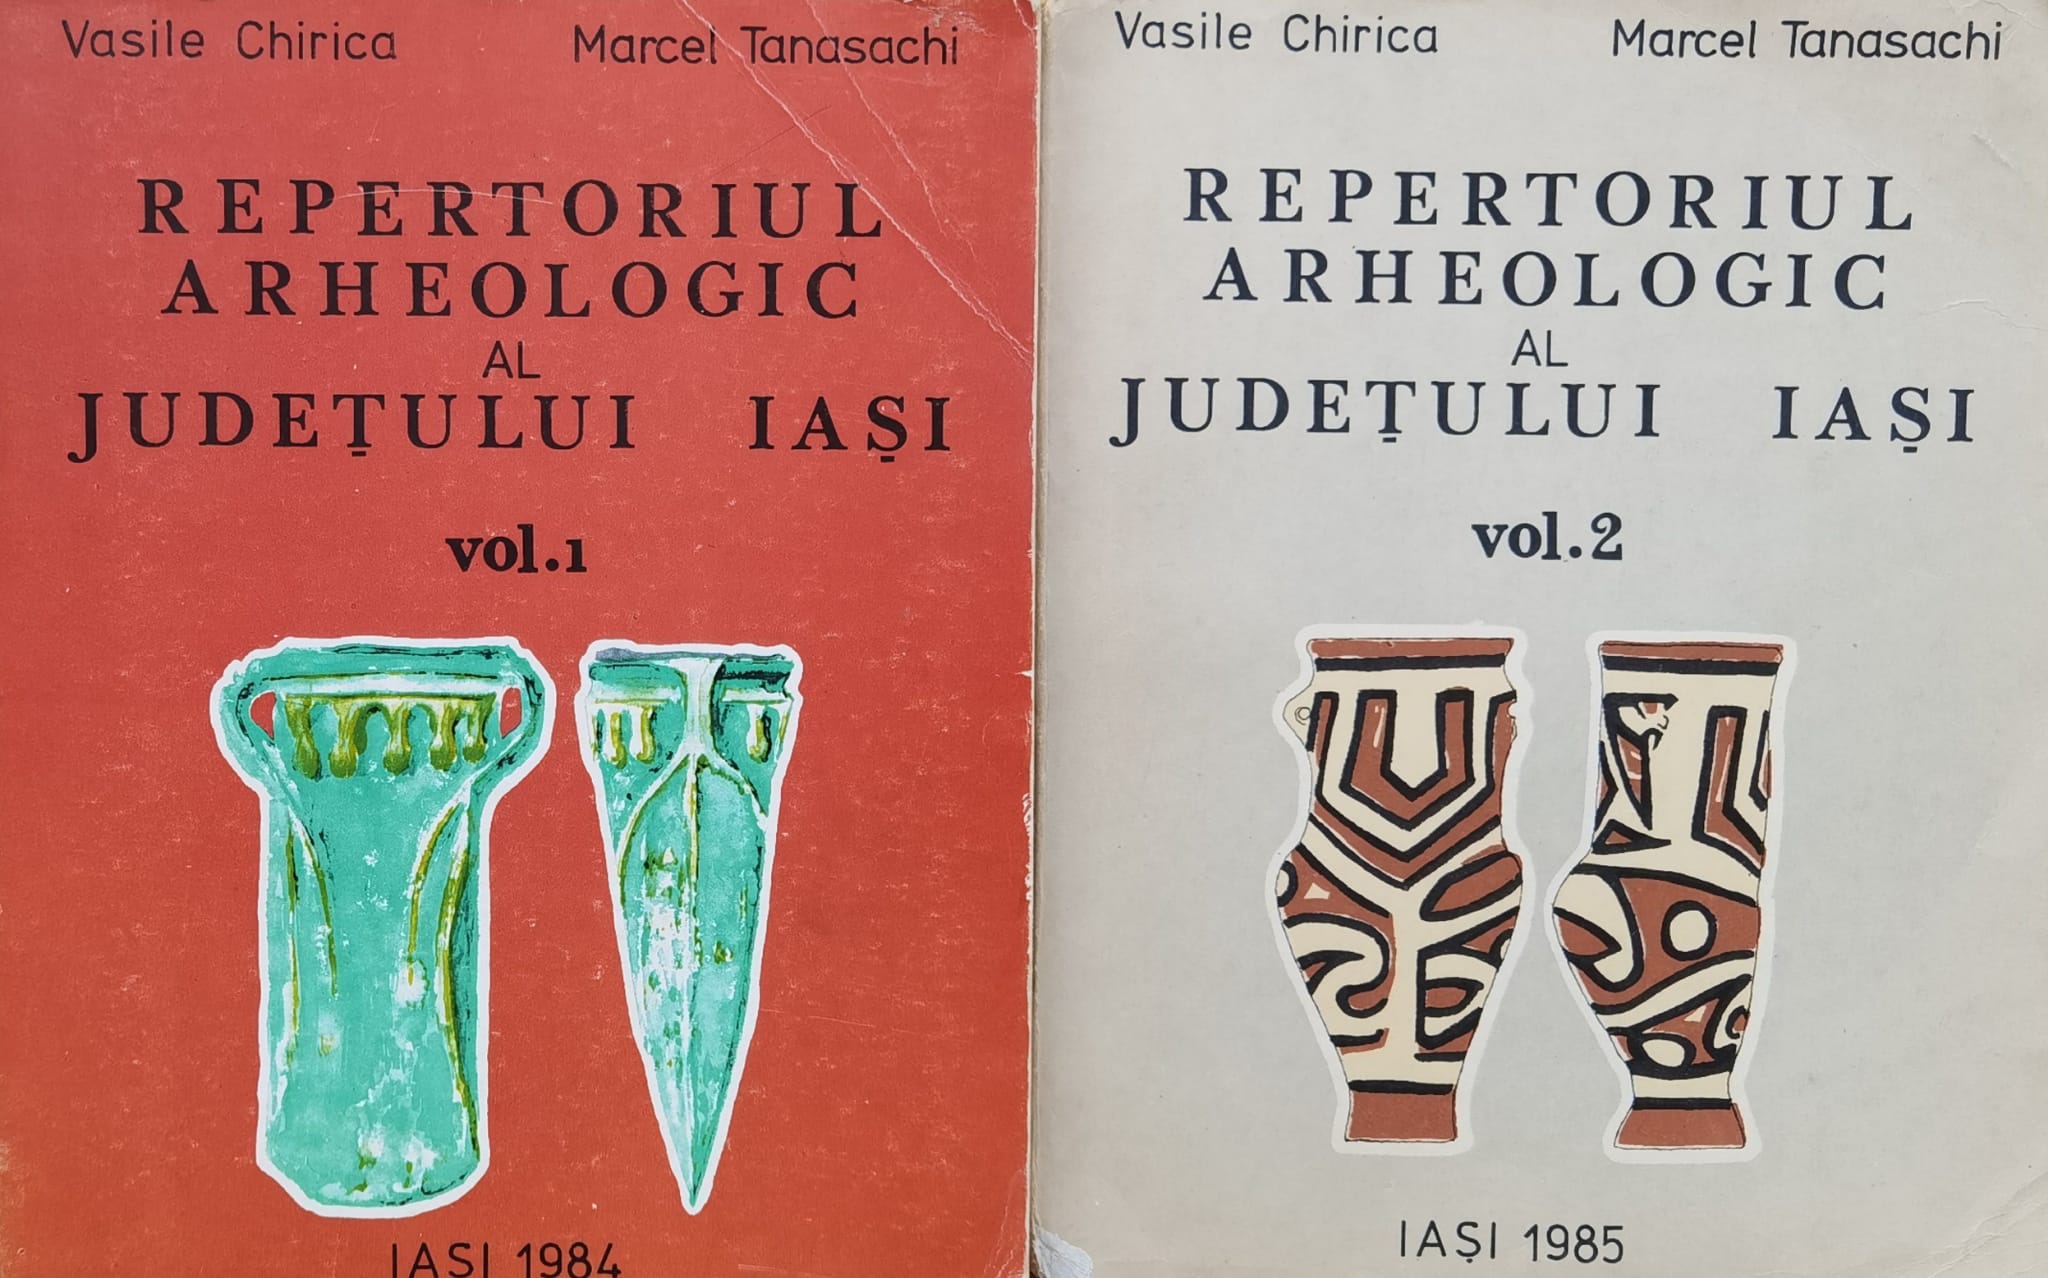 repertoriul arheologic al judetului iasi vol.1-2                                                     vasile chirica, marcel tanasachi                                                                    